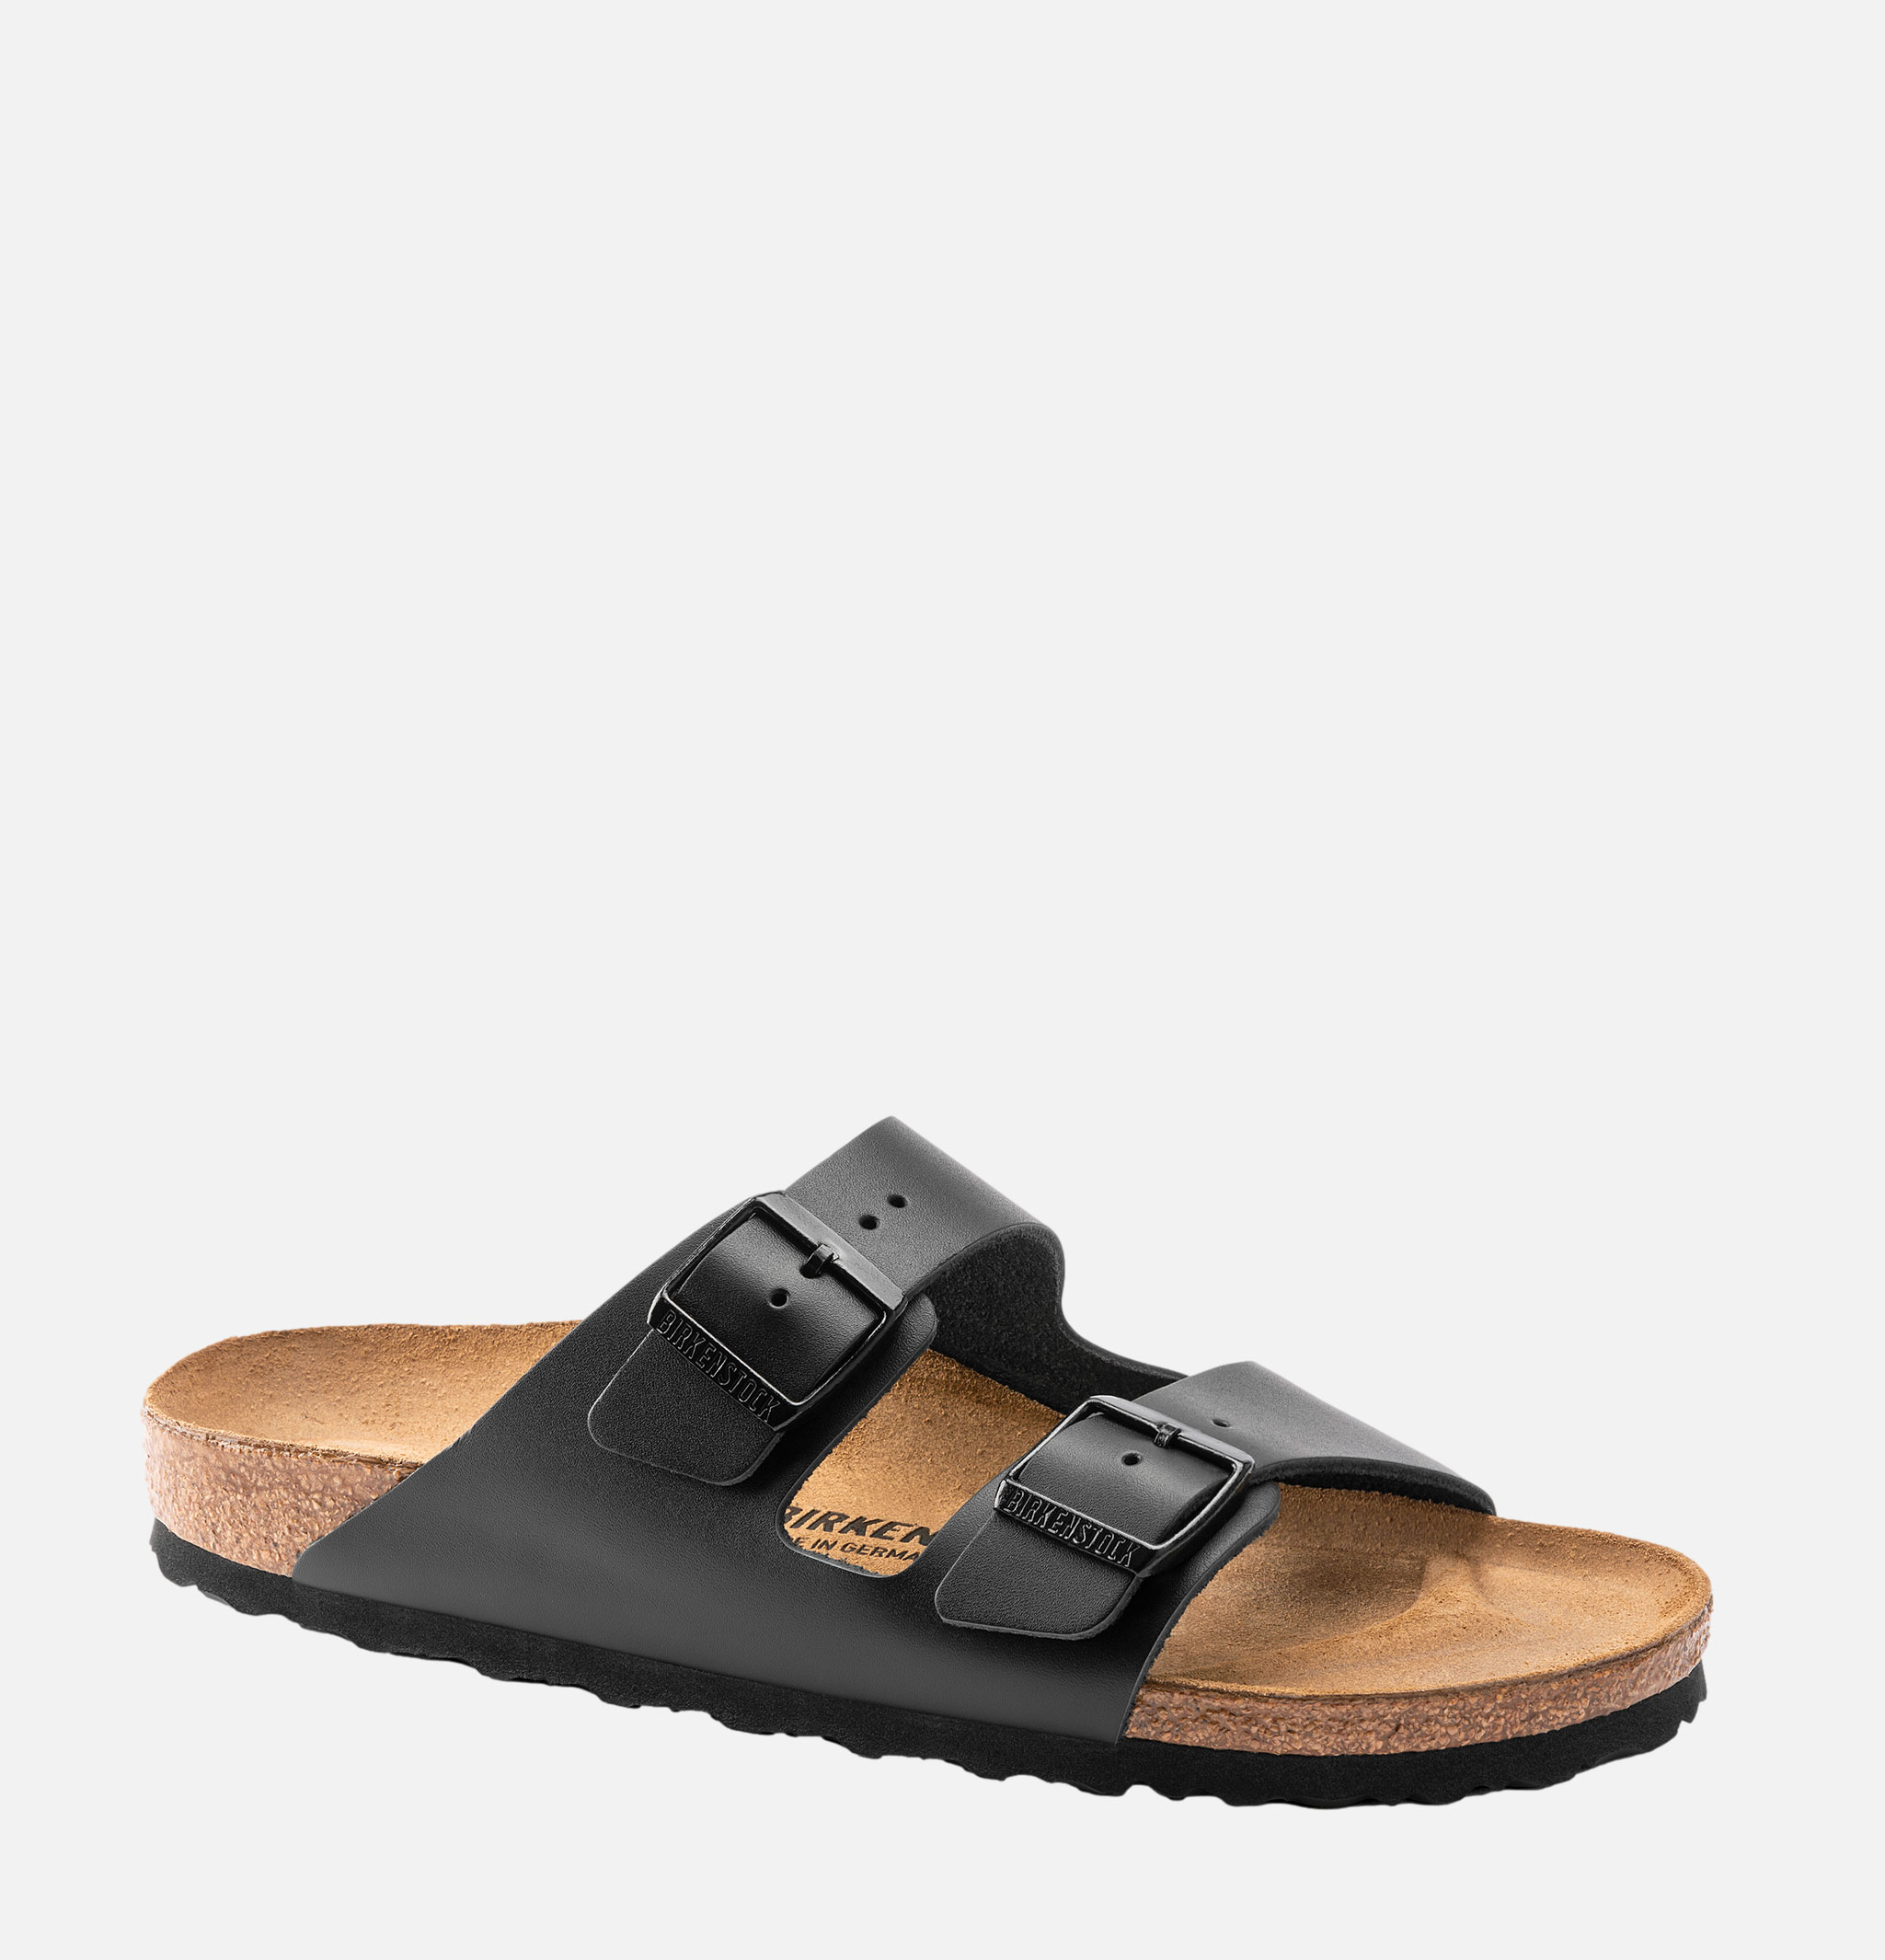 Sandals Arizona Cuir Noir